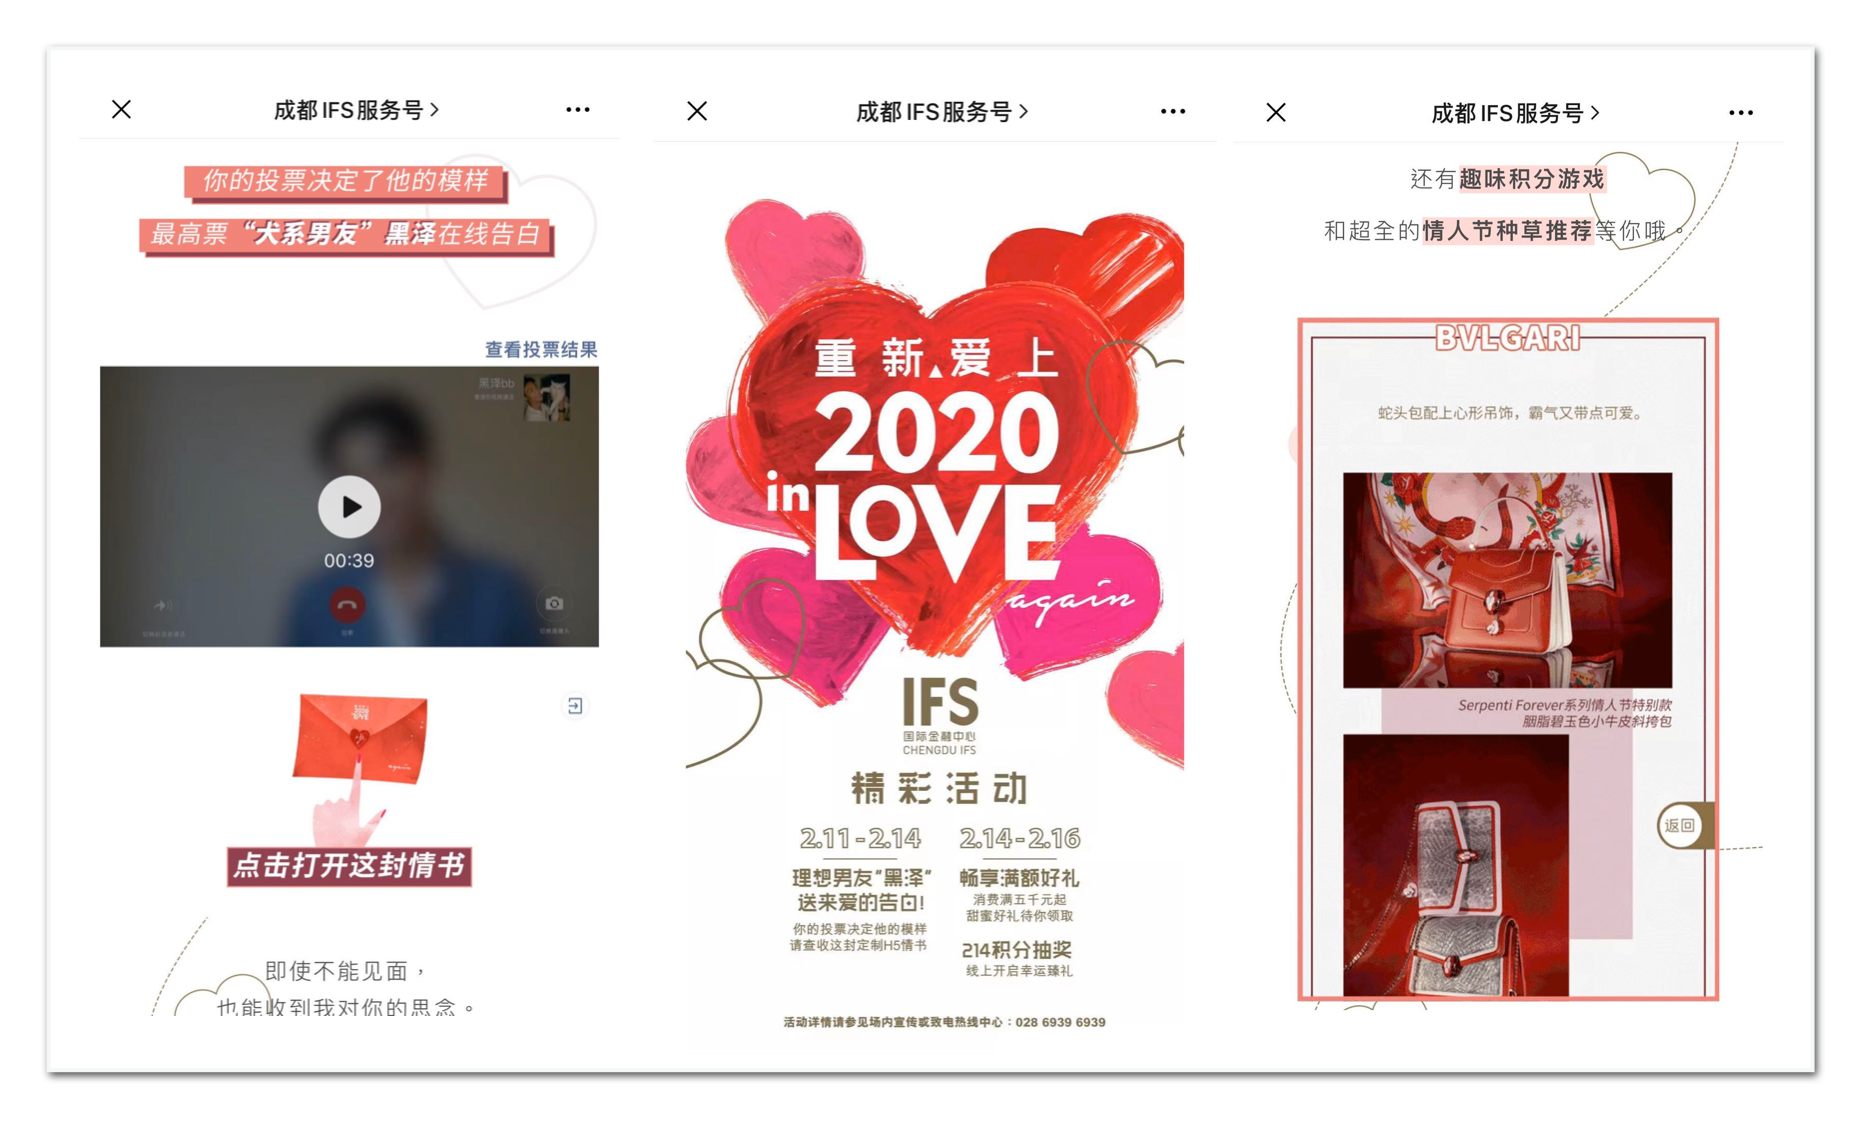 Chengdu IFS Valentine's Day campaign. Photo: WeChat